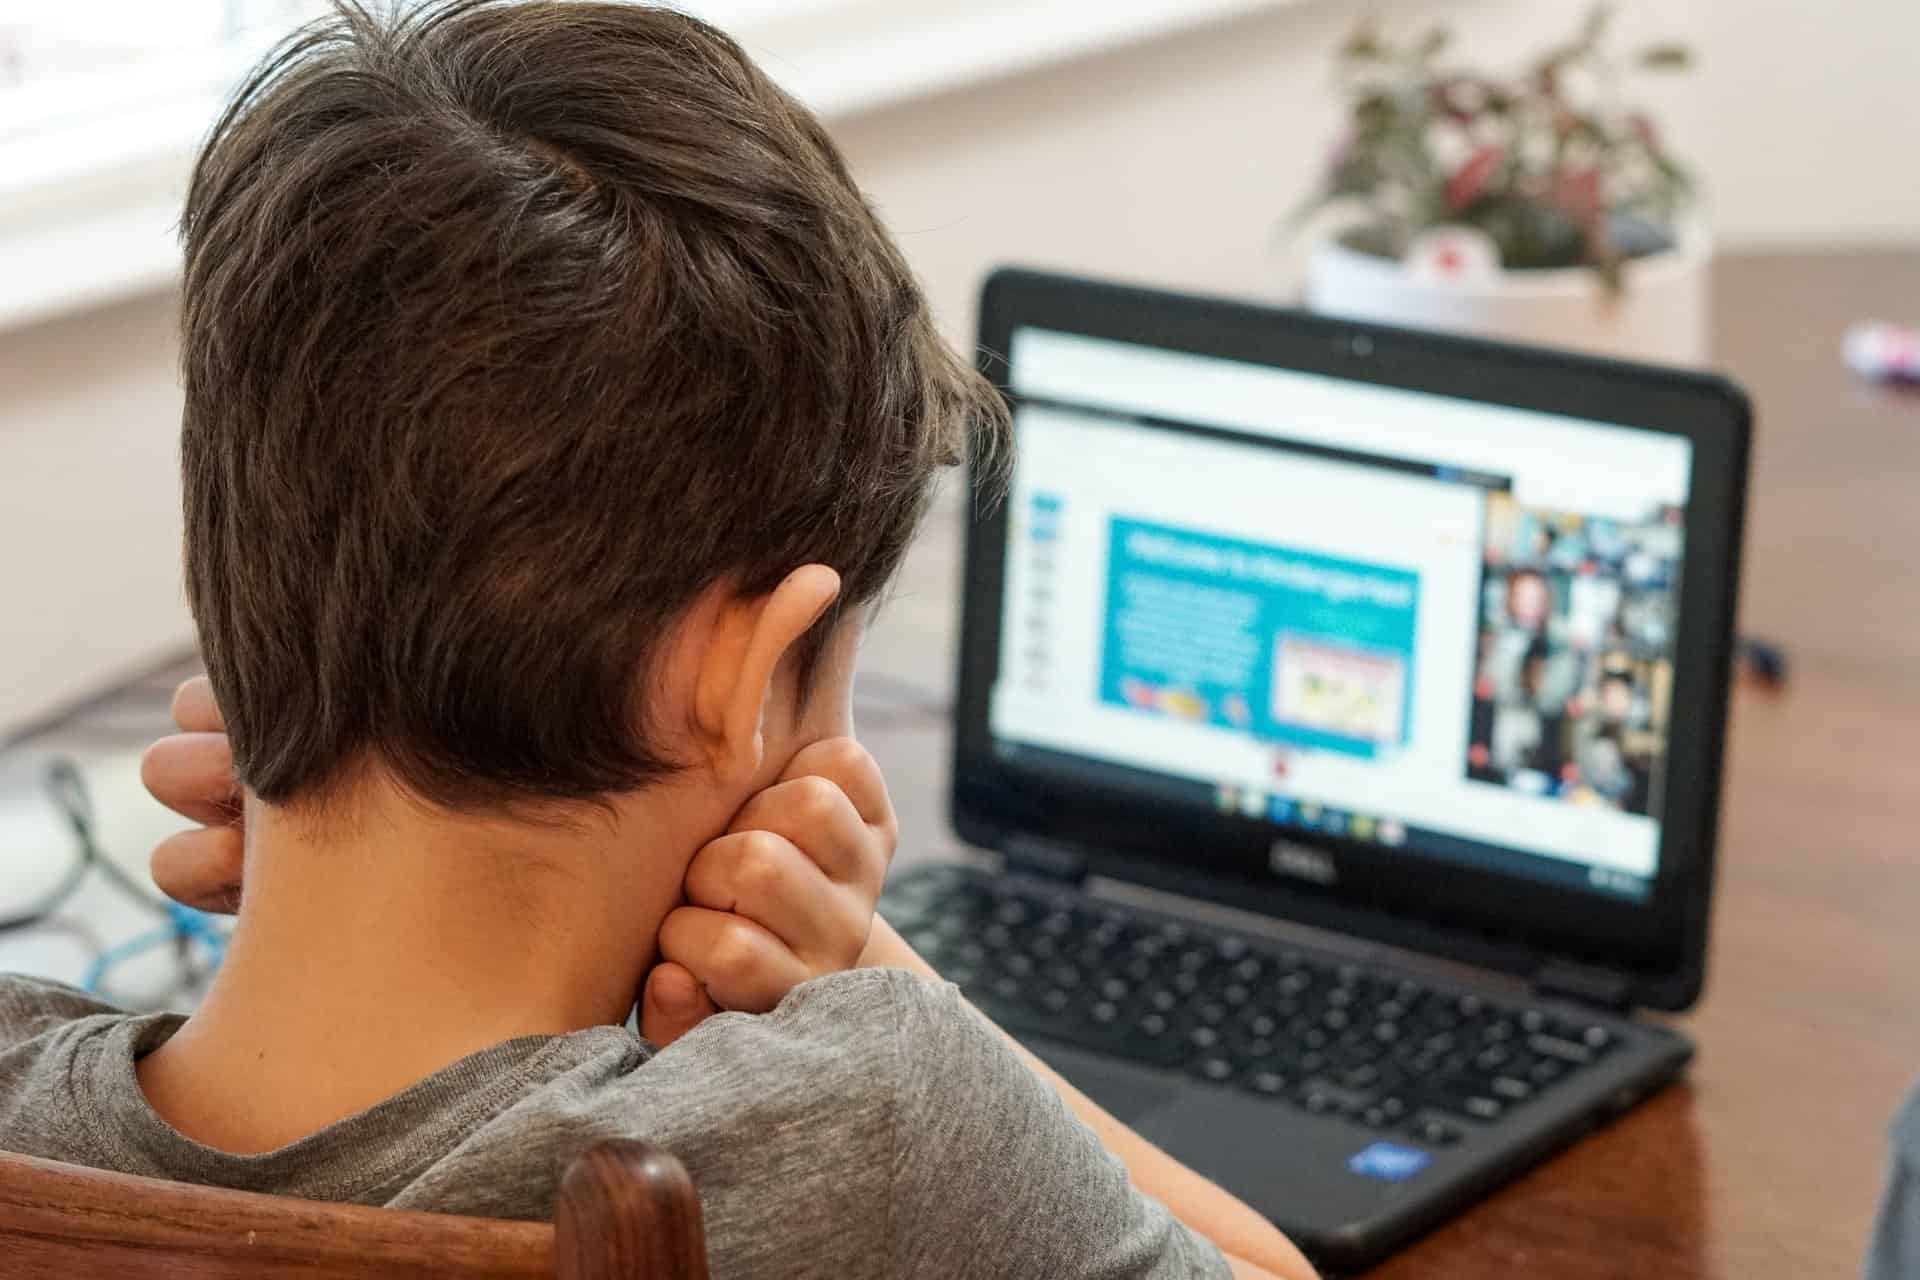 Boy learning online